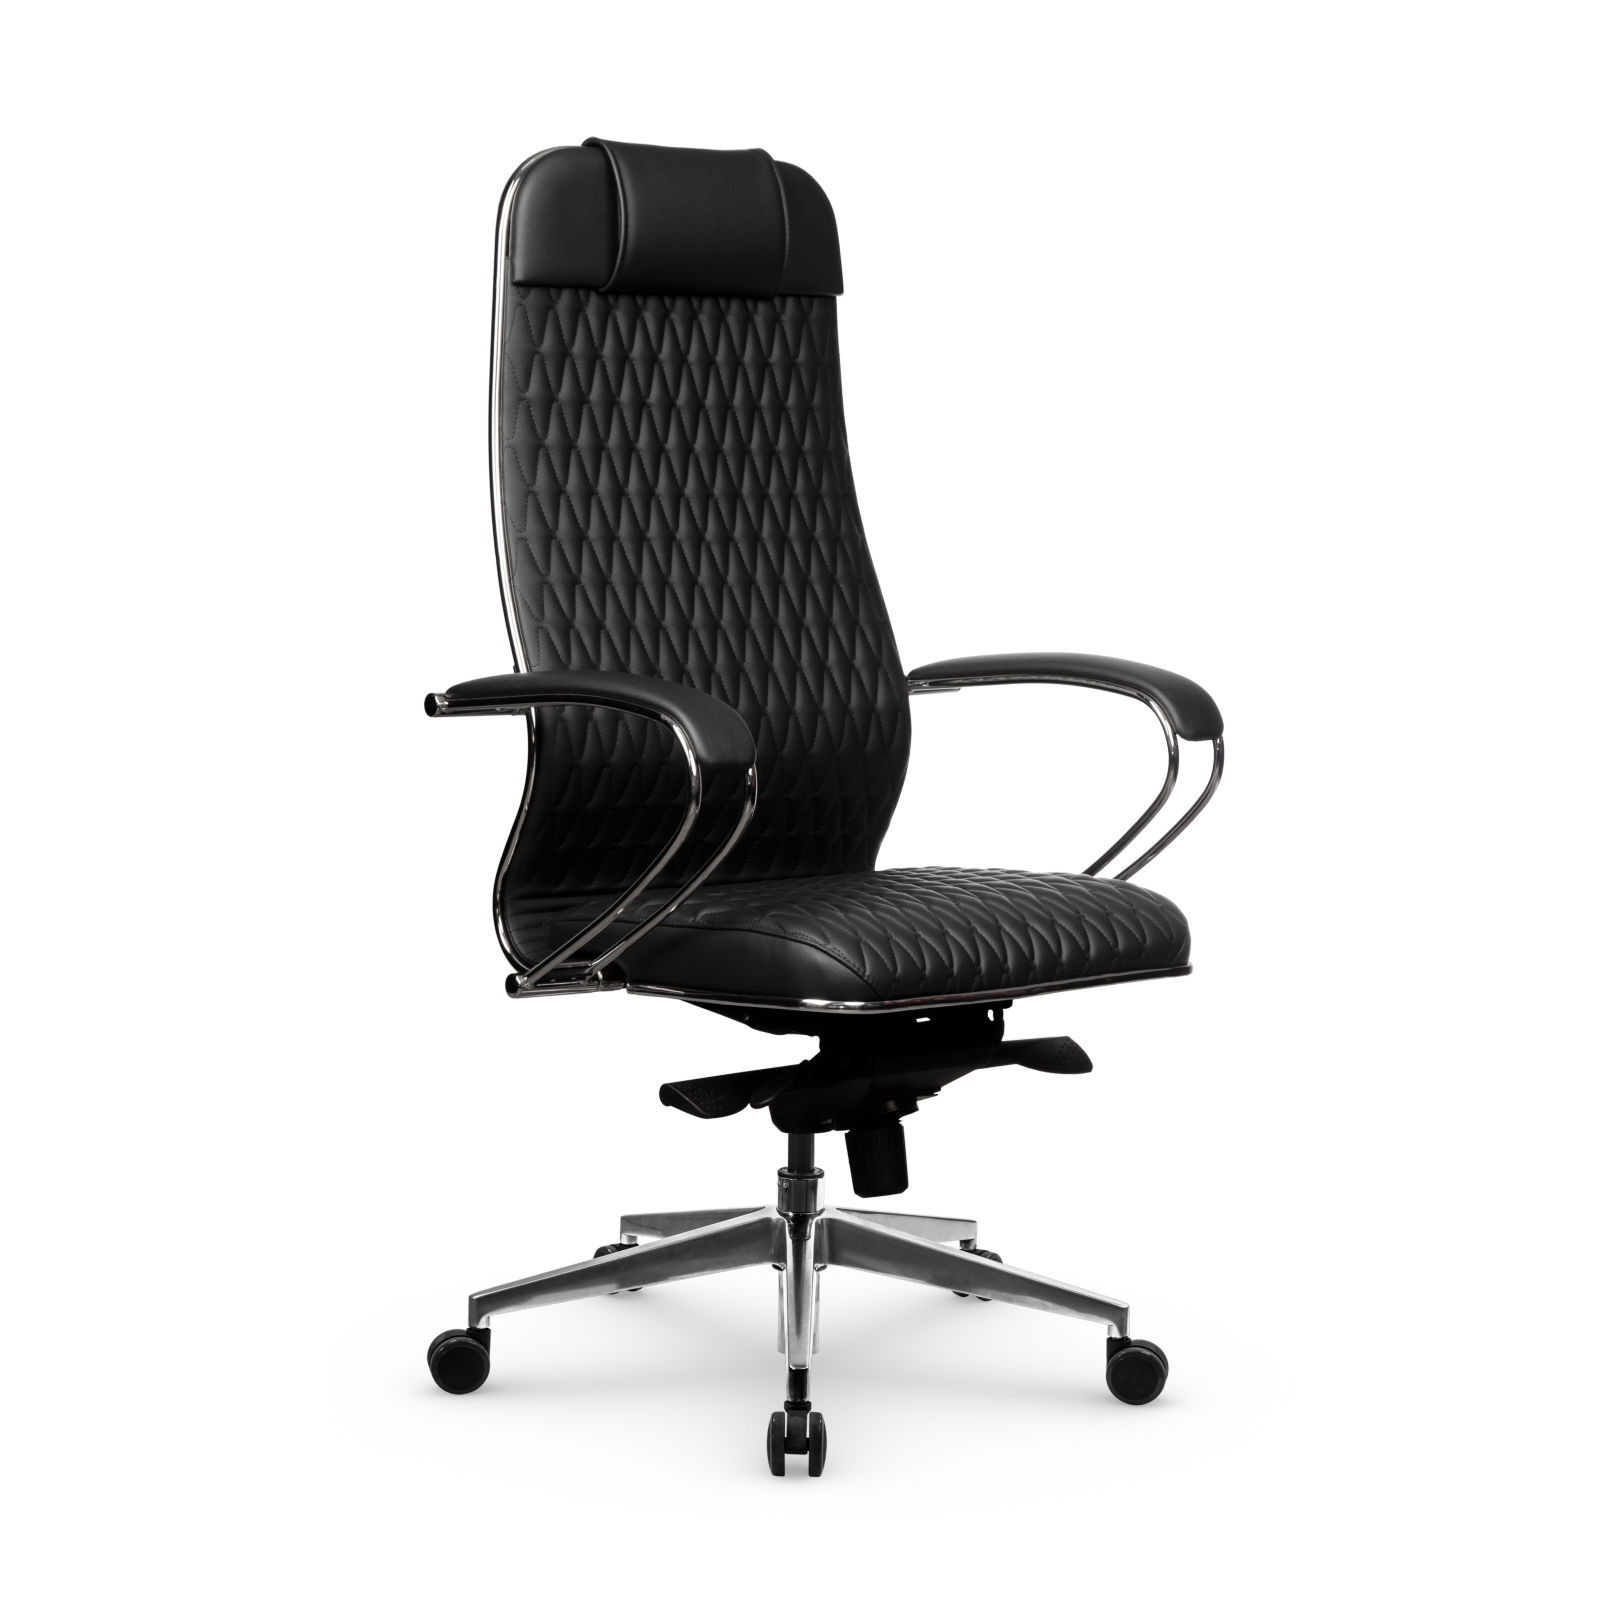 Кресло Samurai KL-1.041 MPES, кресло Метта с механизмом качания, кресло компьютерное, кресло офисное, кресло самурай, кресло для дома и офиса